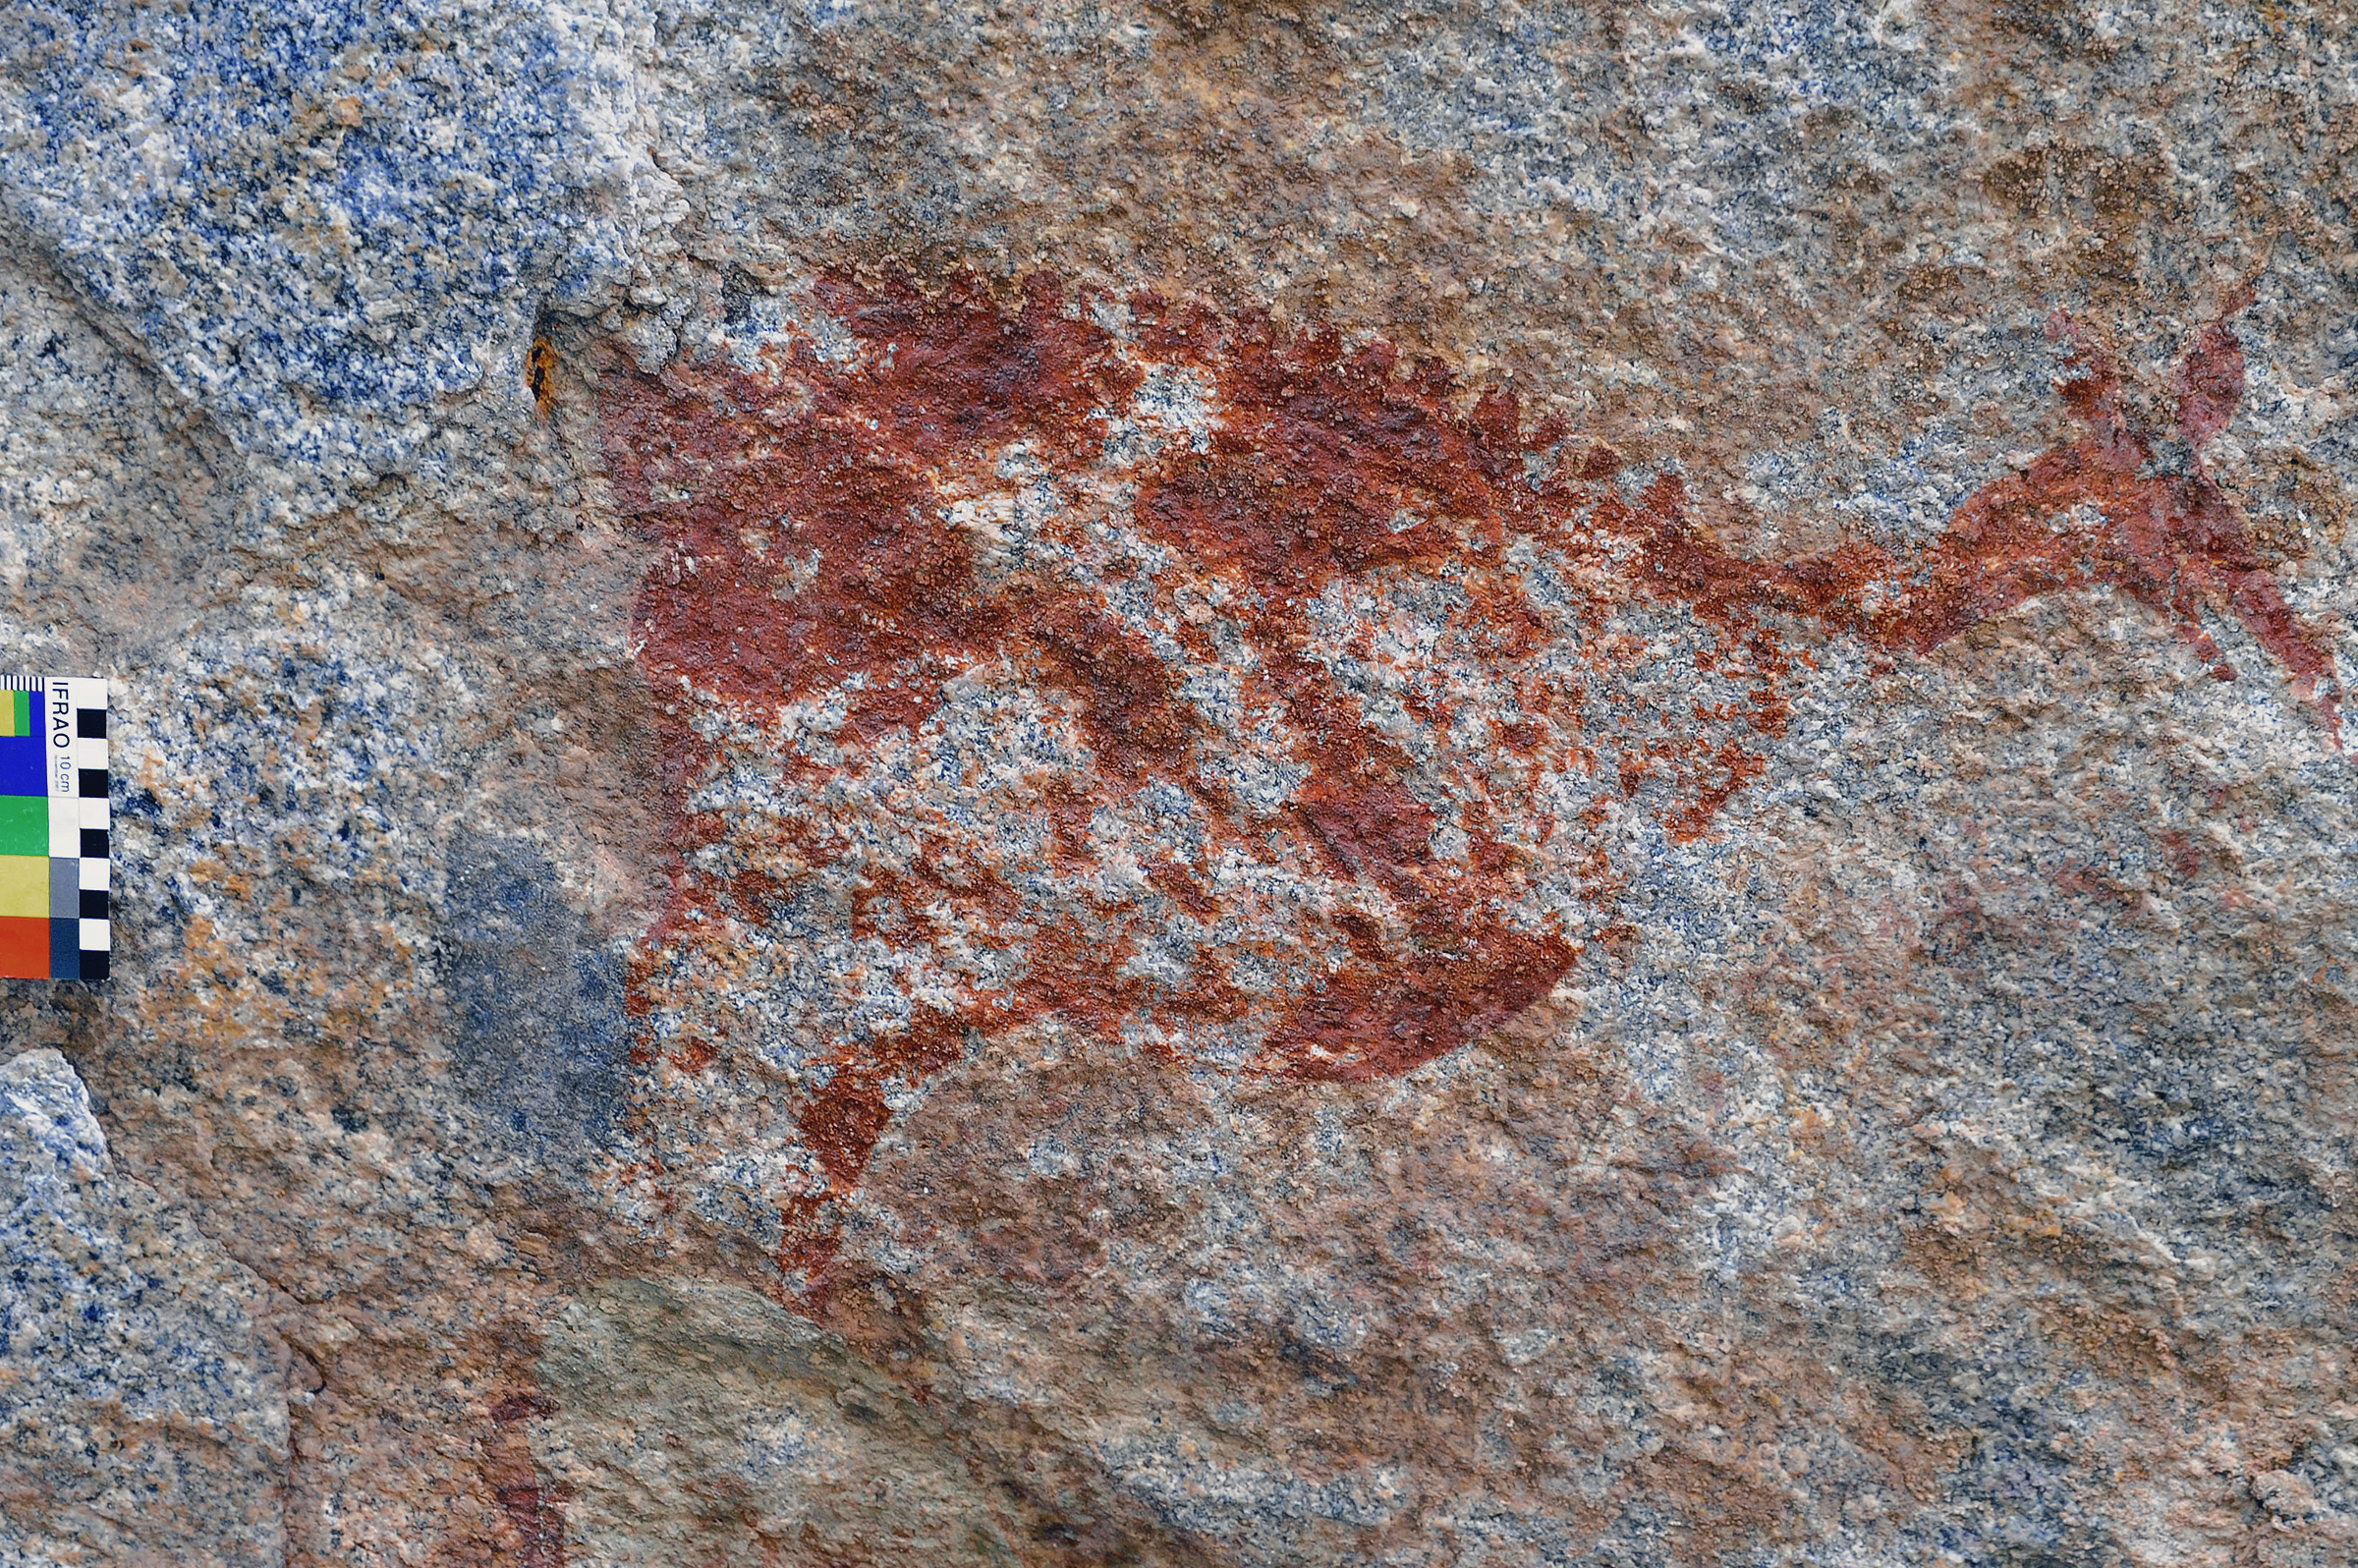 Two Legged Creature Rock Art Markwe Cave Zimbabwe Africa Archaeology